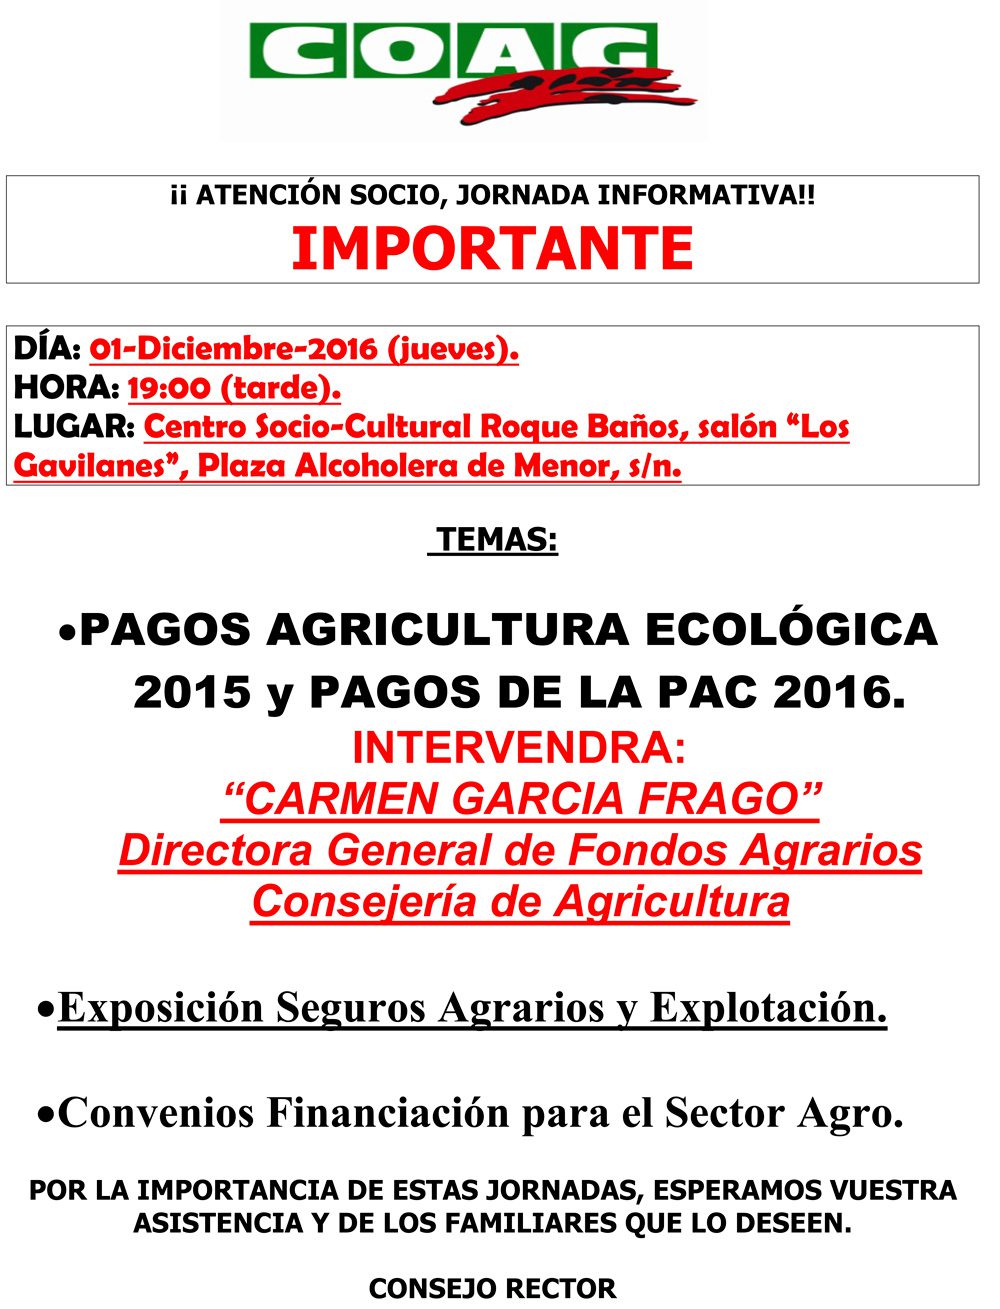 COAG celebra esta tarde una jornada informativa sobre los pagos para la agricultura ecológica 2015 y pagos de la PAC 2016 en el Roque Baños